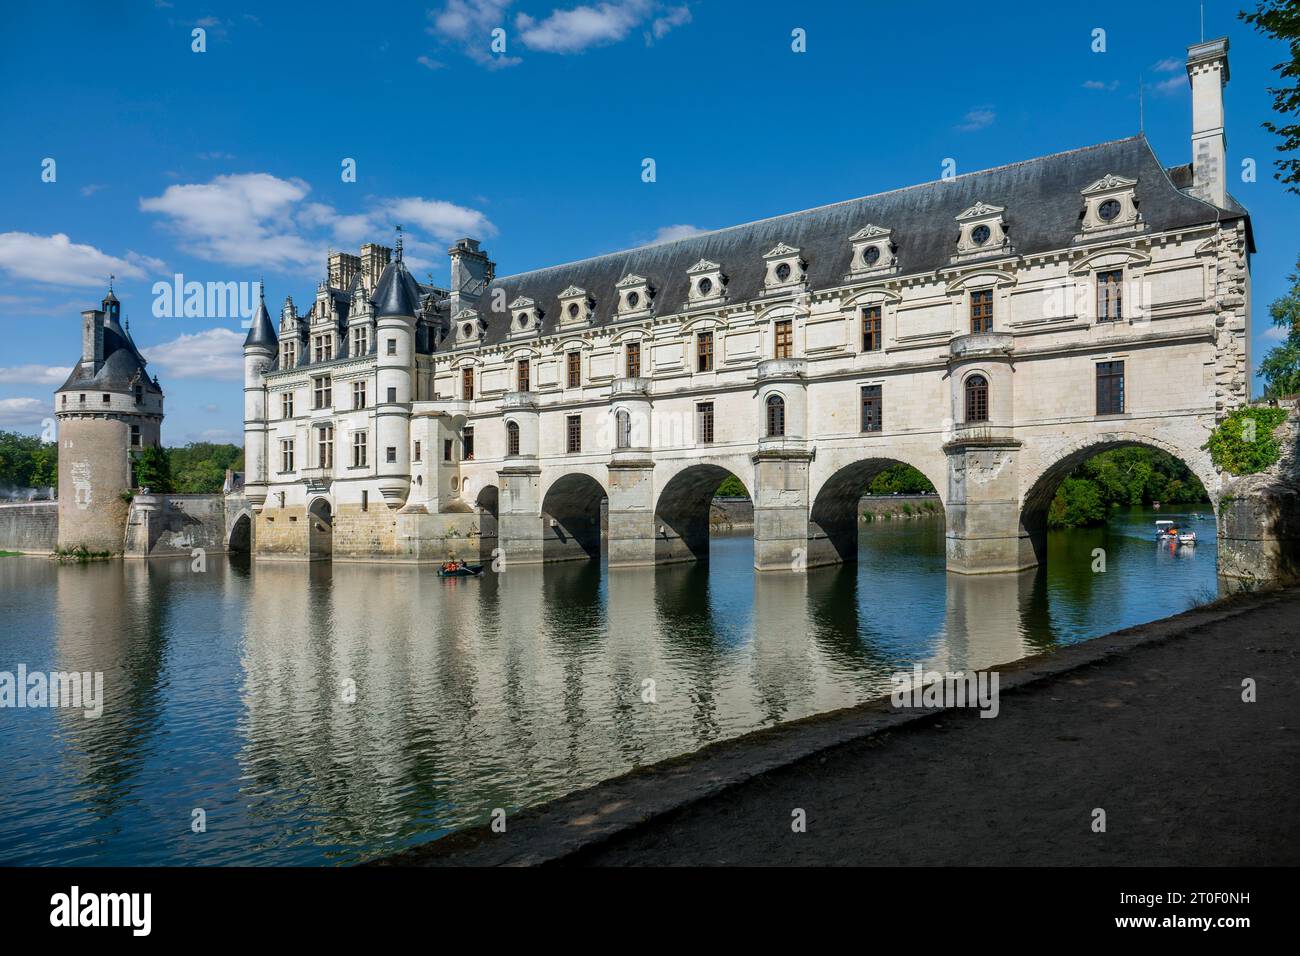 Le château de Chenonceau est un château à douves. Son bâtiment principal se dresse sur la rive nord du cher depuis 1522, tandis que la galerie, achevée en 1576, enjambe la rivière. Bien que Chenonceau se trouve sur le cher, il est compté parmi les châteaux de la Loire. Banque D'Images